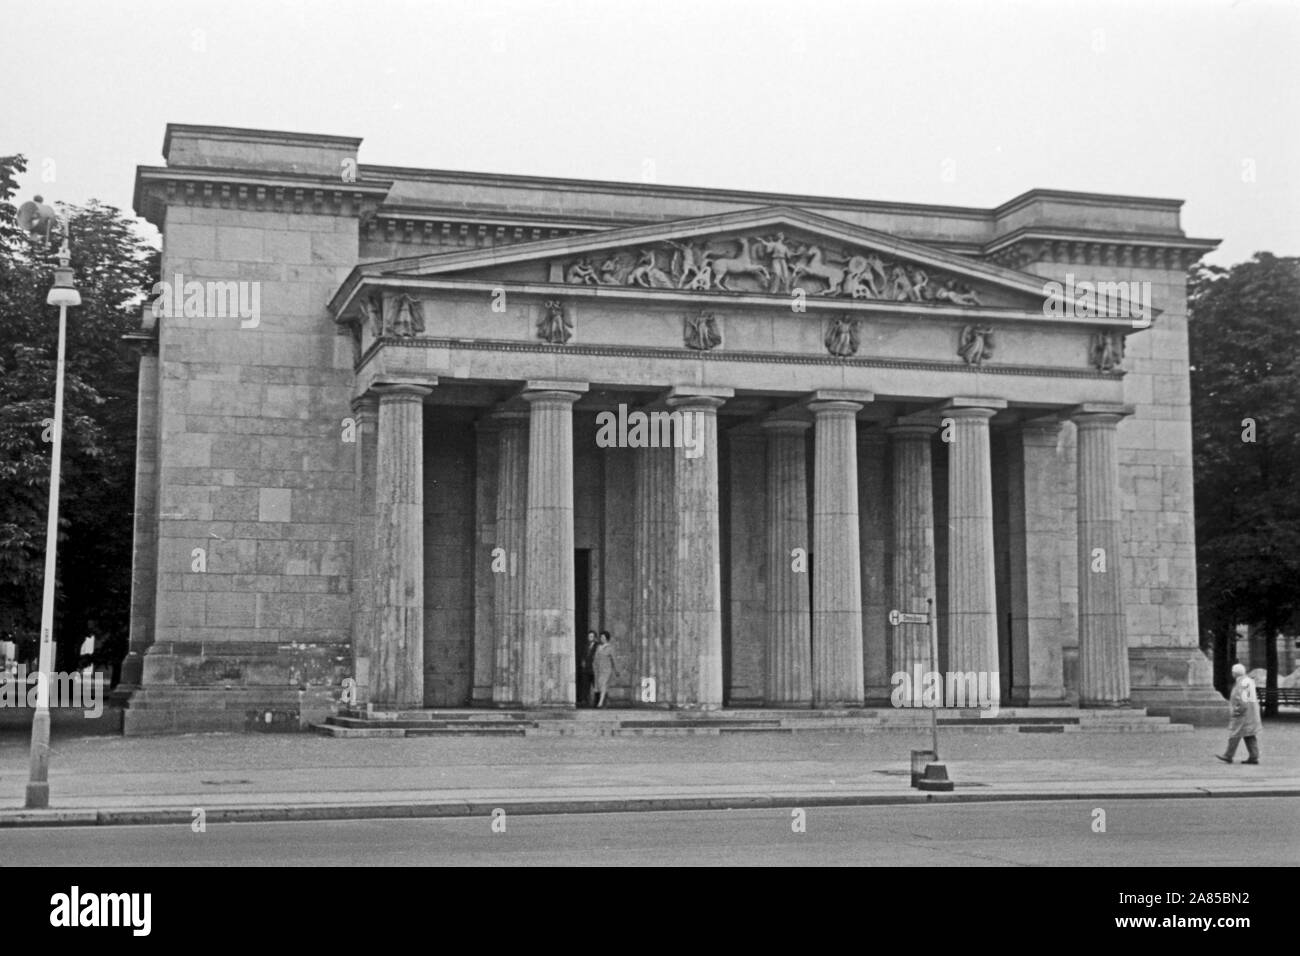 Neue Wache neben der Humboldt Universität de Berlin, Deutschland 1961. Nouveau poste de garde à côté de l'université Humboldt à Berlin, Allemagne 1961. Banque D'Images